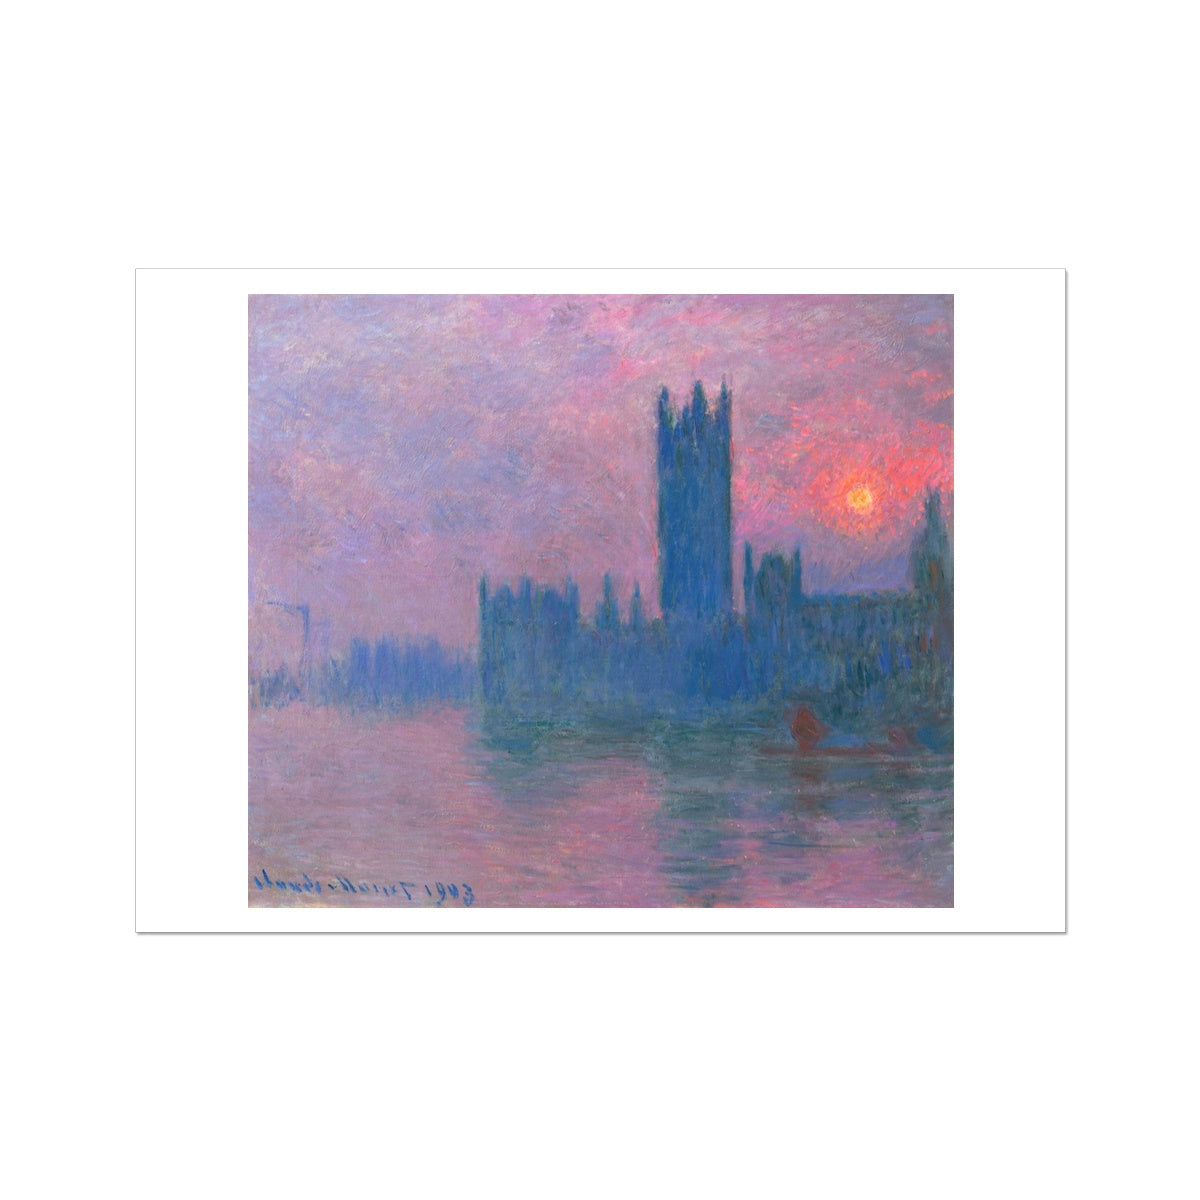 &#39;Le Parlement, Soleil Couchant&#39; (Parliament, Setting Sun- London)  by Claude Monet. Open Edition Fine Art Print. Historic Art